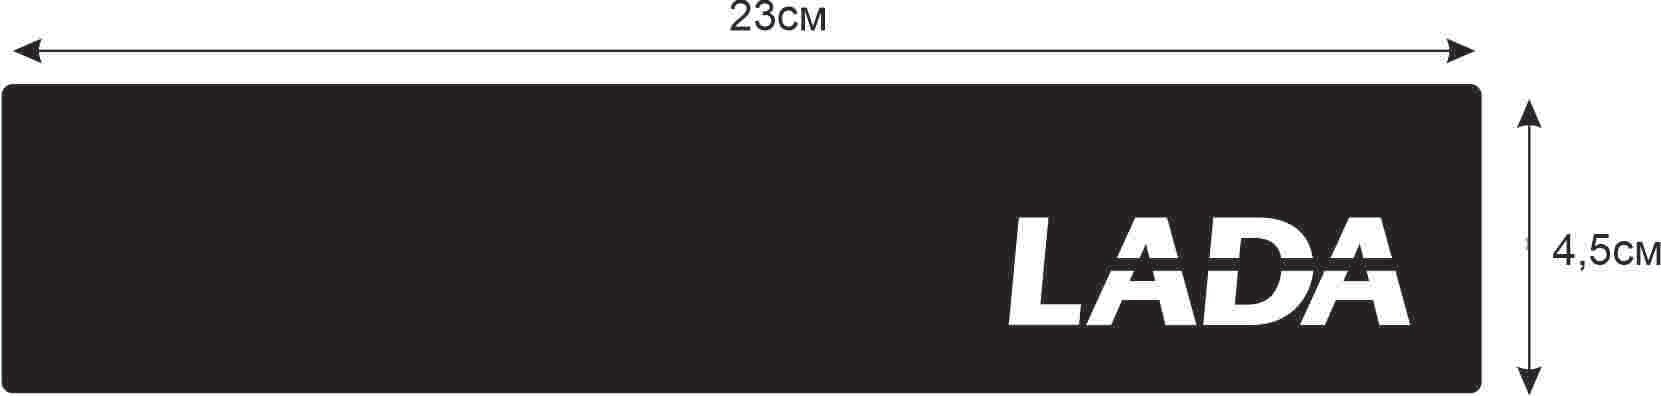 Облицовка на заглушку бортового компьютера c надписью LADA для ВАЗ 2108-2109-21099-2114-2115 (1шт.)